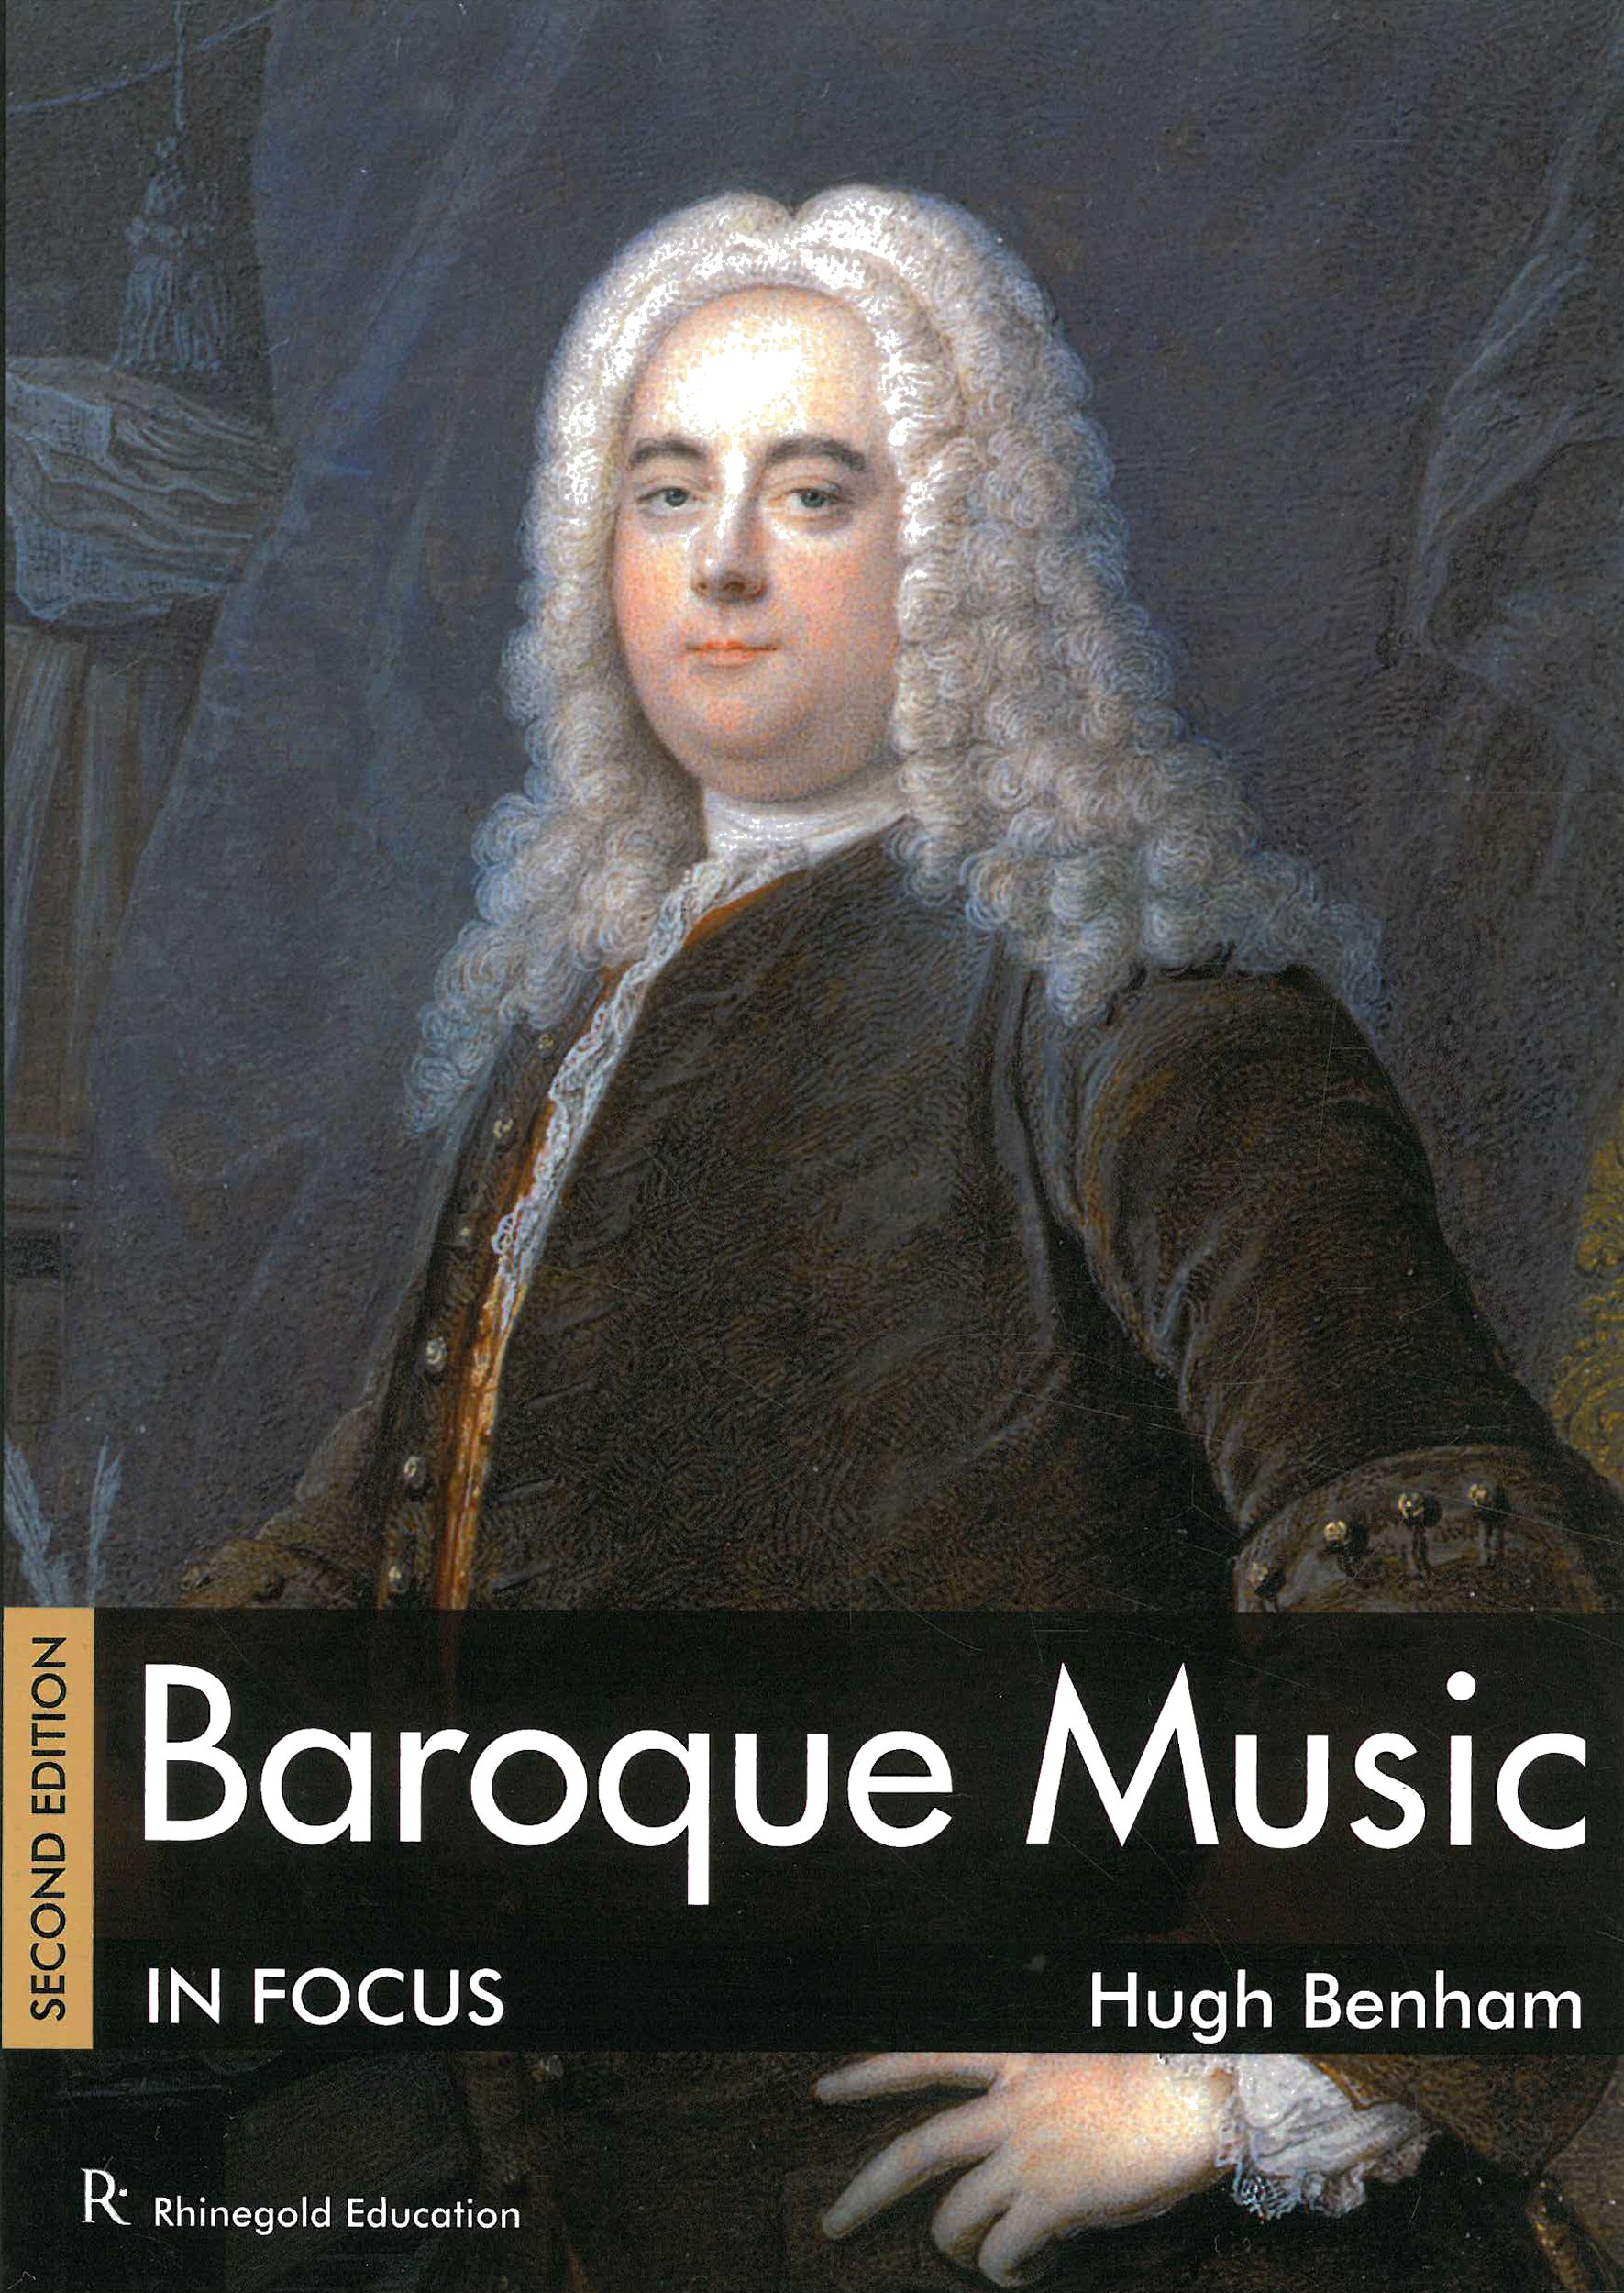 Hugh Benham: Baroque Music In Focus: History